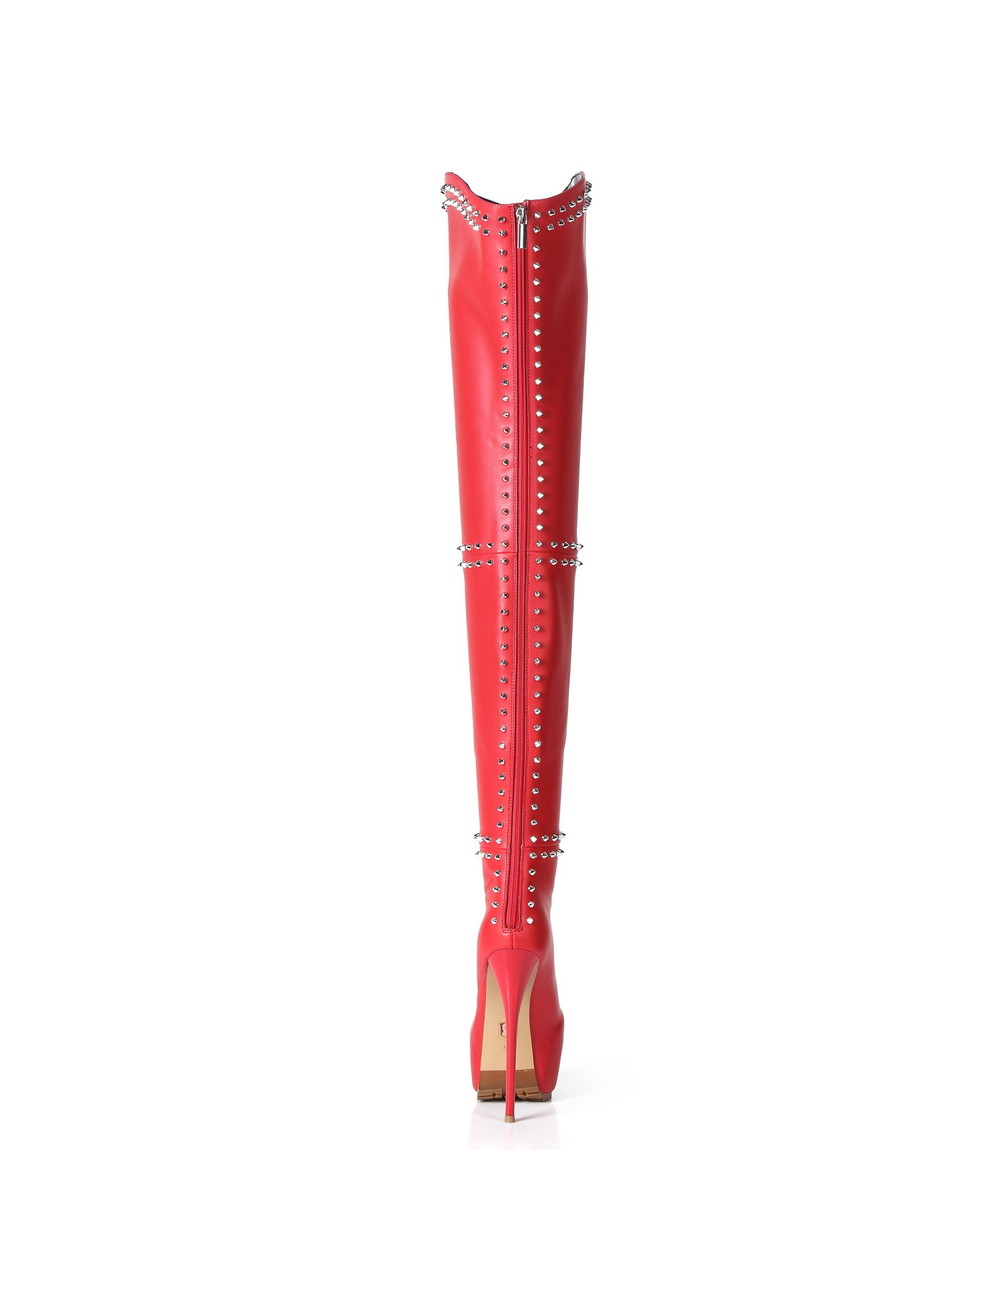 Giaro Giaro SOPHIA red studded thigh boots profile